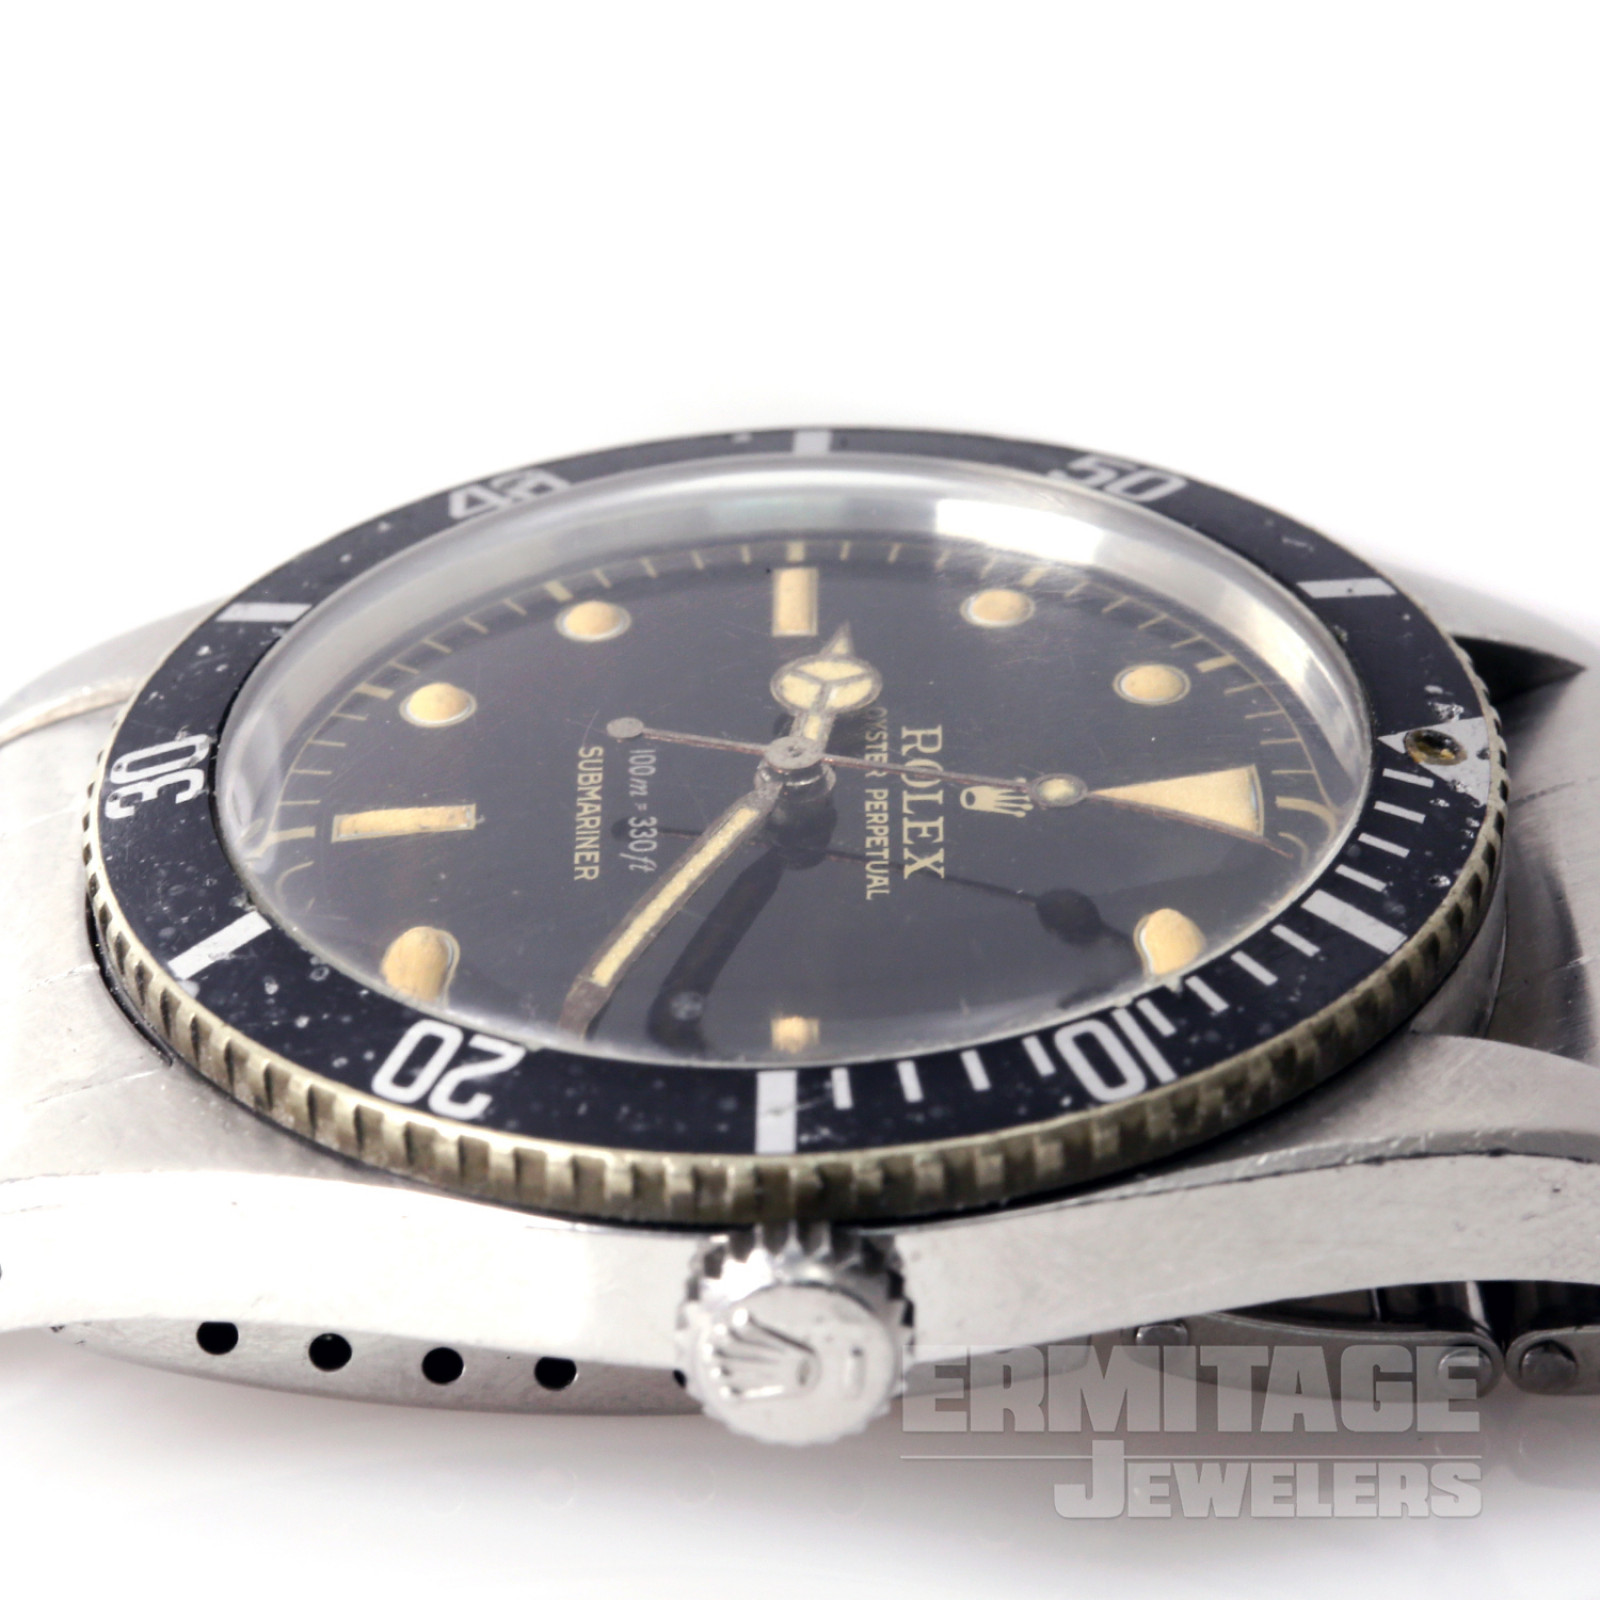 Vintage Rolex Submariner 5508